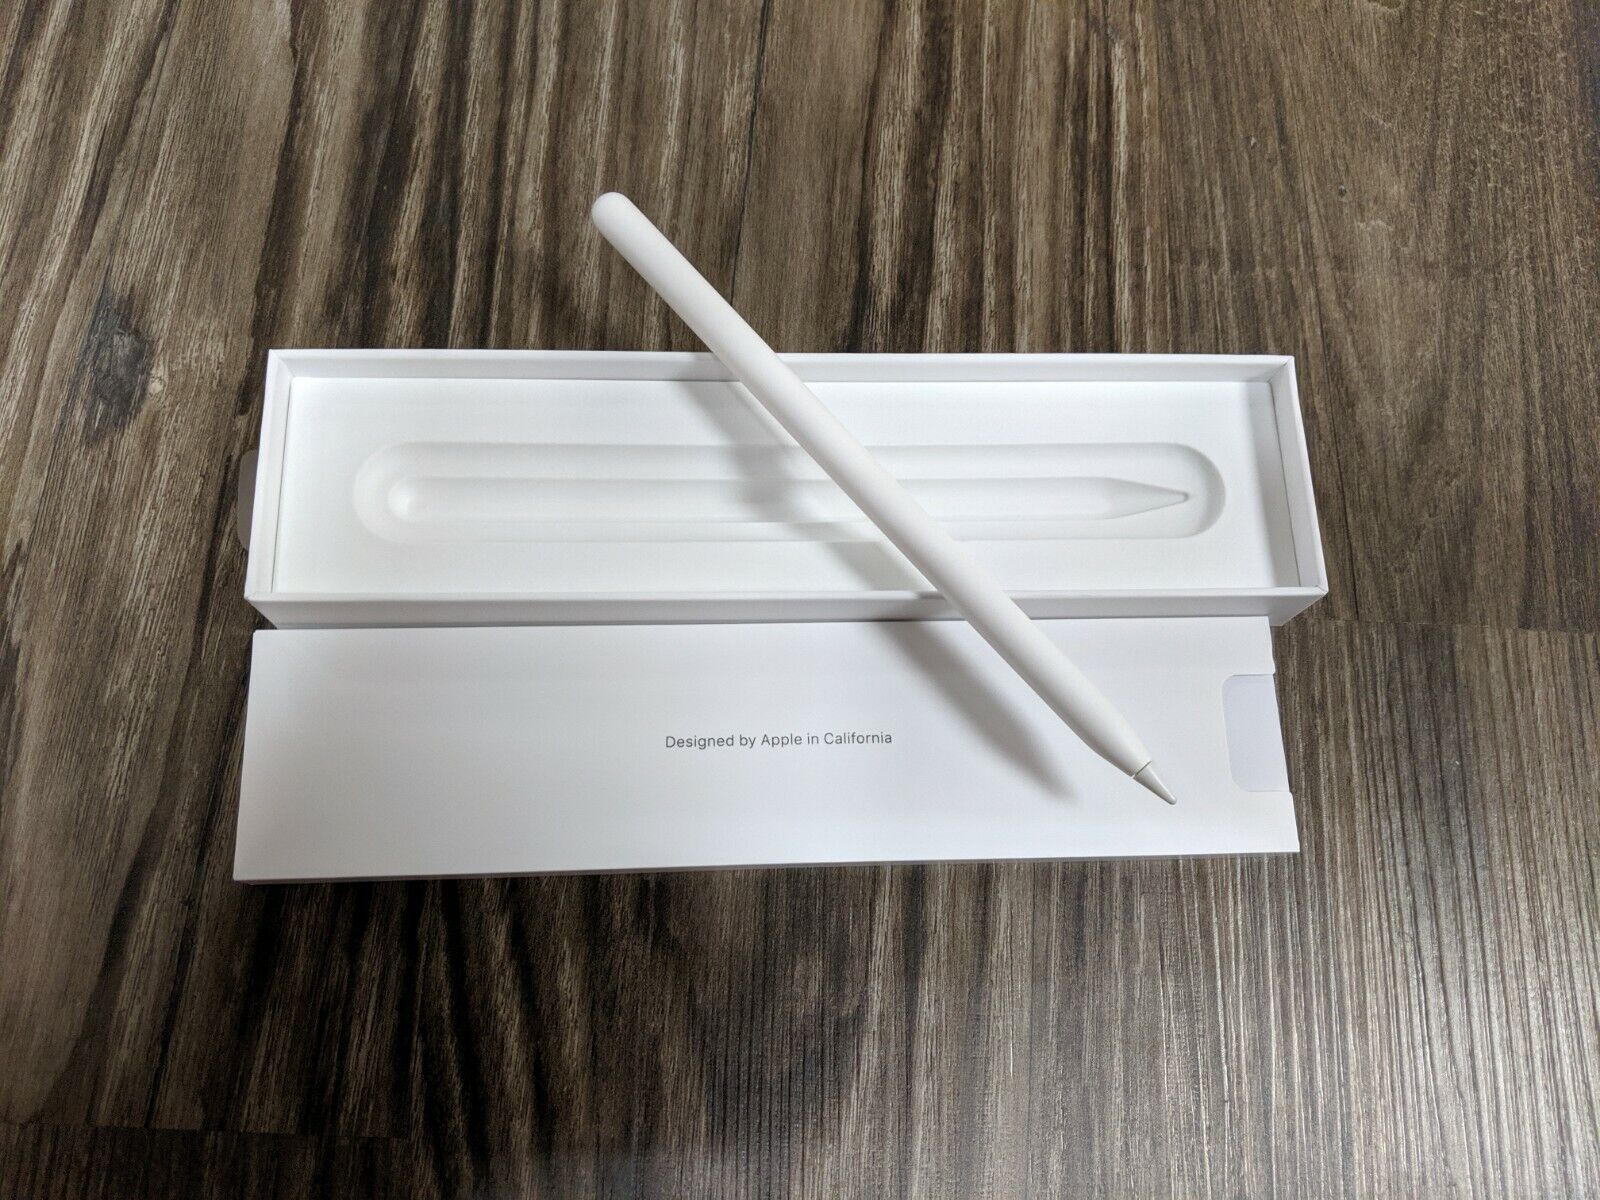 Apple Pencil 2nd Generation - Ipad Pro 12.9 and 11 - MU8F2AM/A 